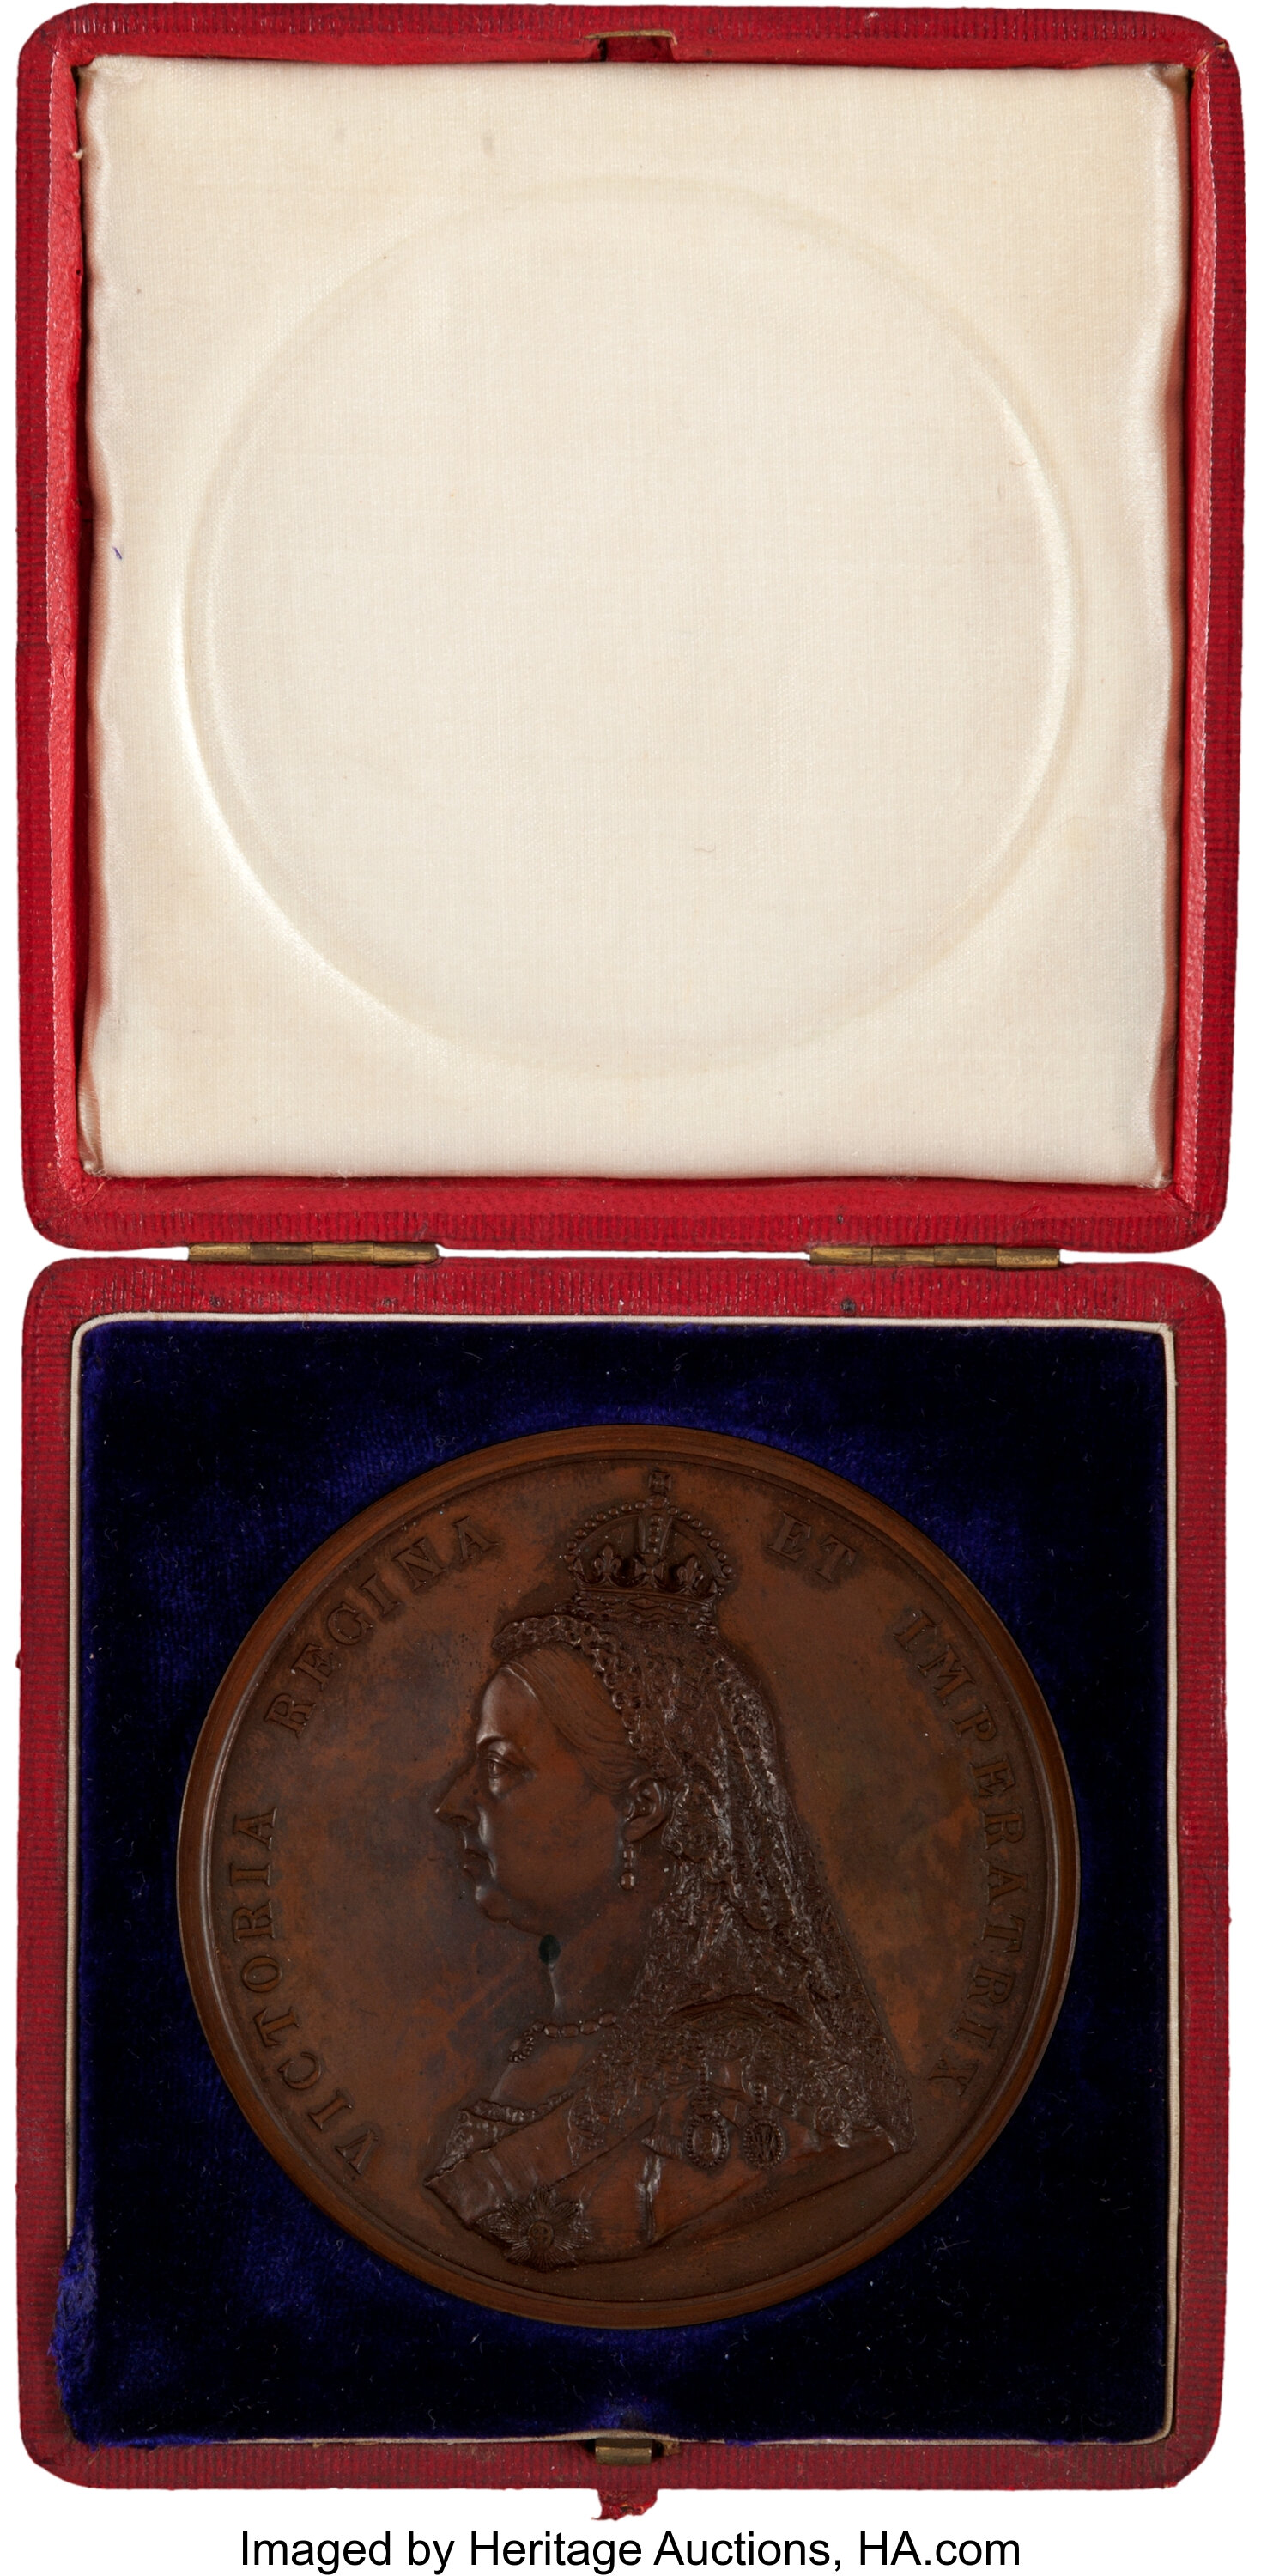 Annie Oakley: Her Queen Victoria's Golden Jubilee Commemorative | Lot  #44016 | Heritage Auctions